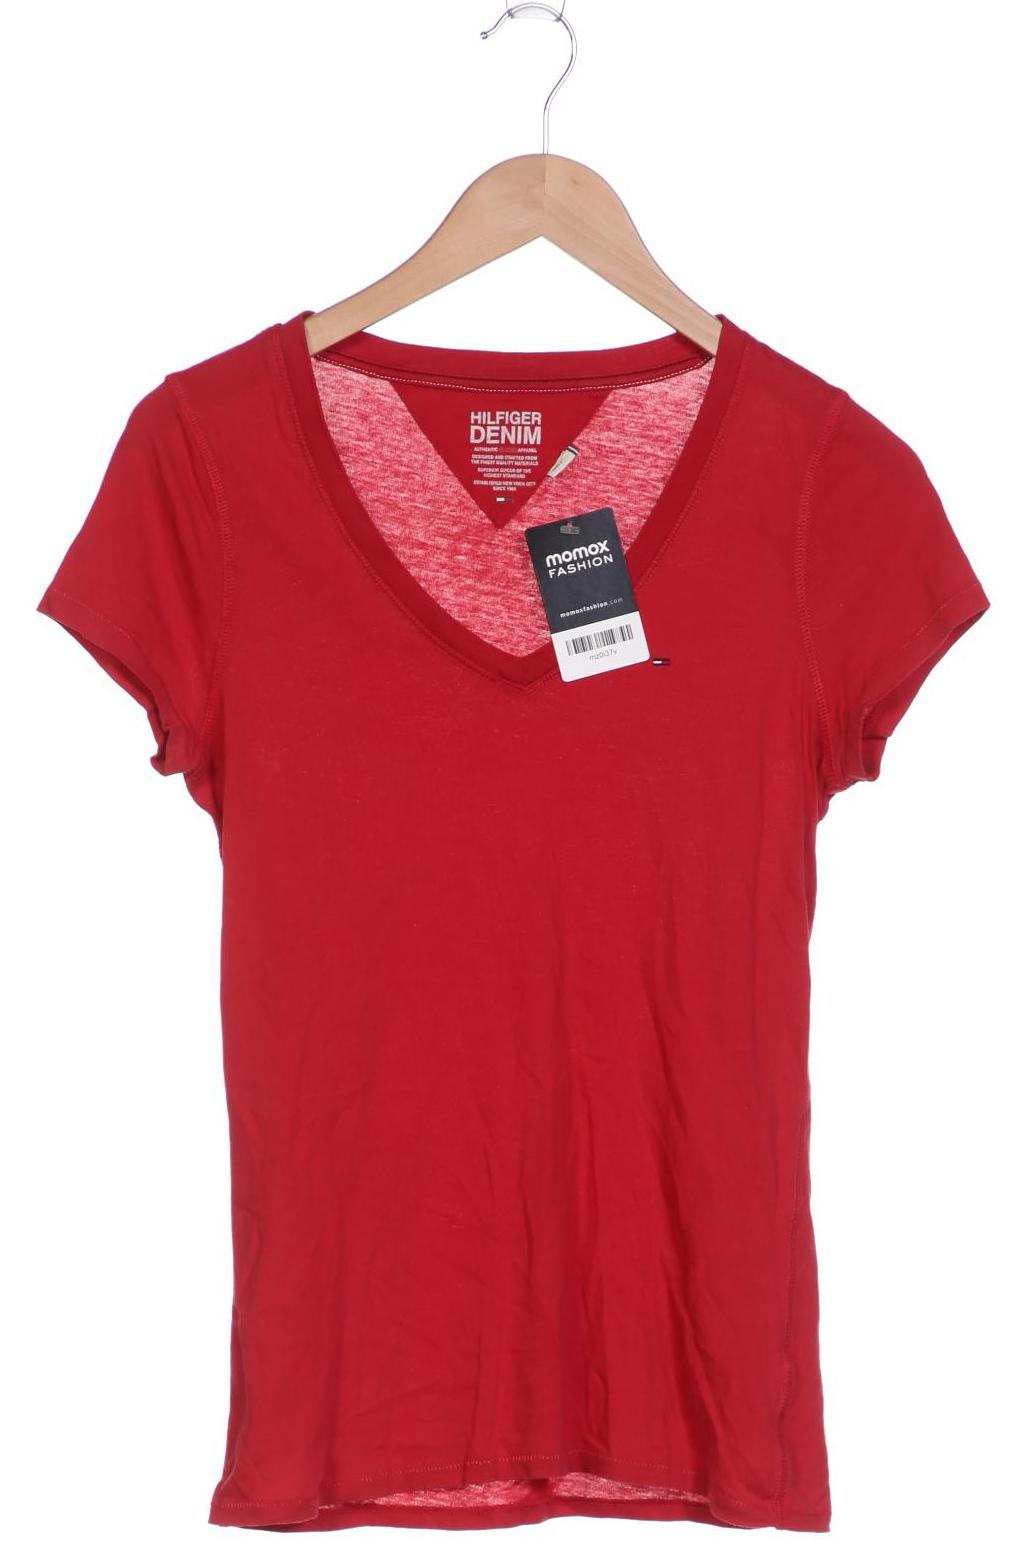 Hilfiger Denim Damen T-Shirt, rot, Gr. 36 von Hilfiger Denim